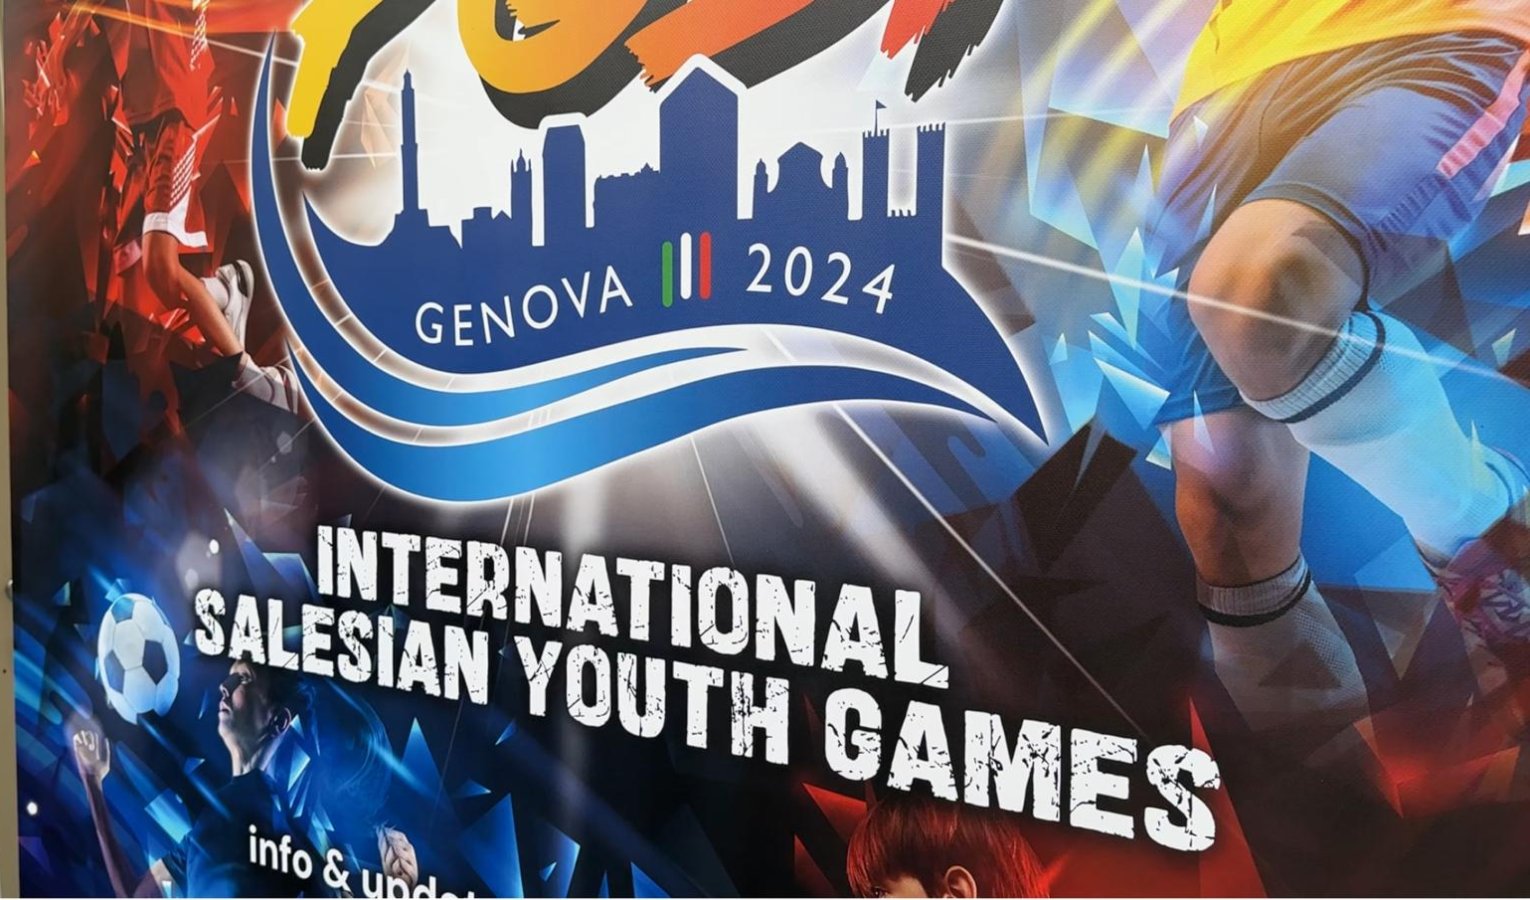 Ottocento ragazzi a Genova per i Giochi Internazionali della Gioventù Salesiana